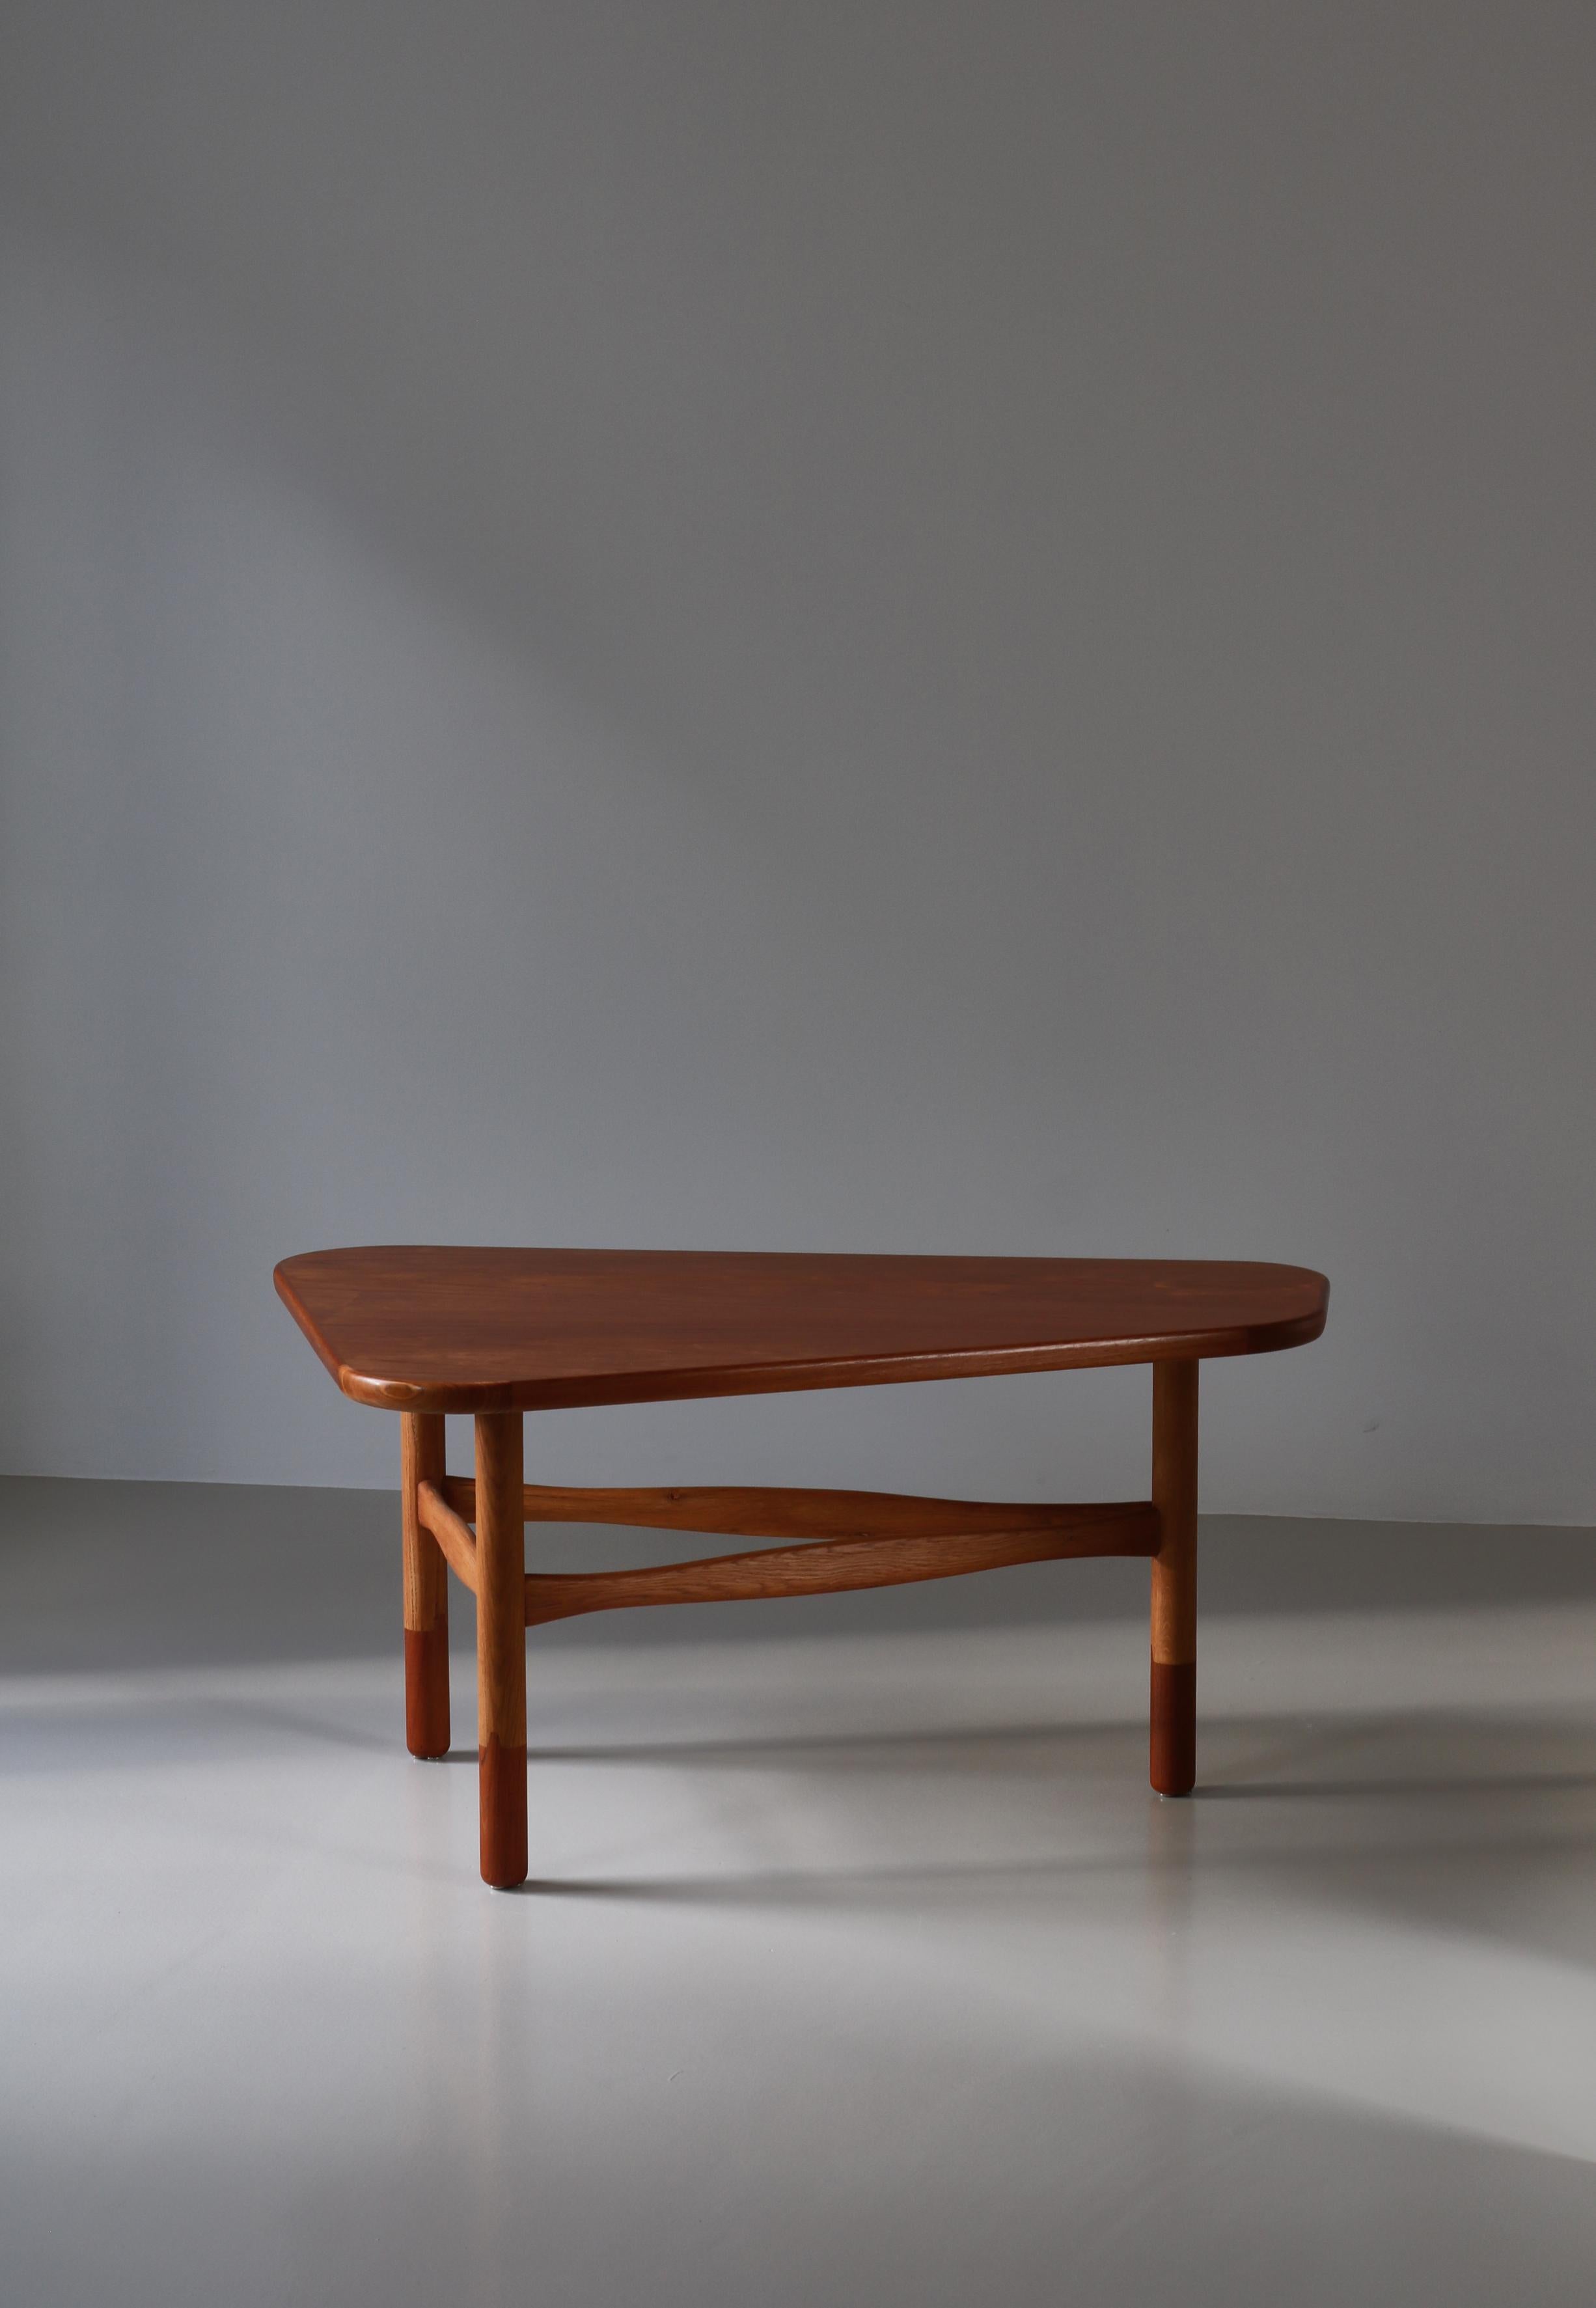 Seltener klobiger Couchtisch, entworfen von Yngve Ekström in den 1950er Jahren und hergestellt von Westbergs Möbler in Schweden. Dieser wunderbare Tisch hat eine sanft gerundete dreieckige Teakholzplatte, die auf drei Beinen aus massiver Eiche ruht,